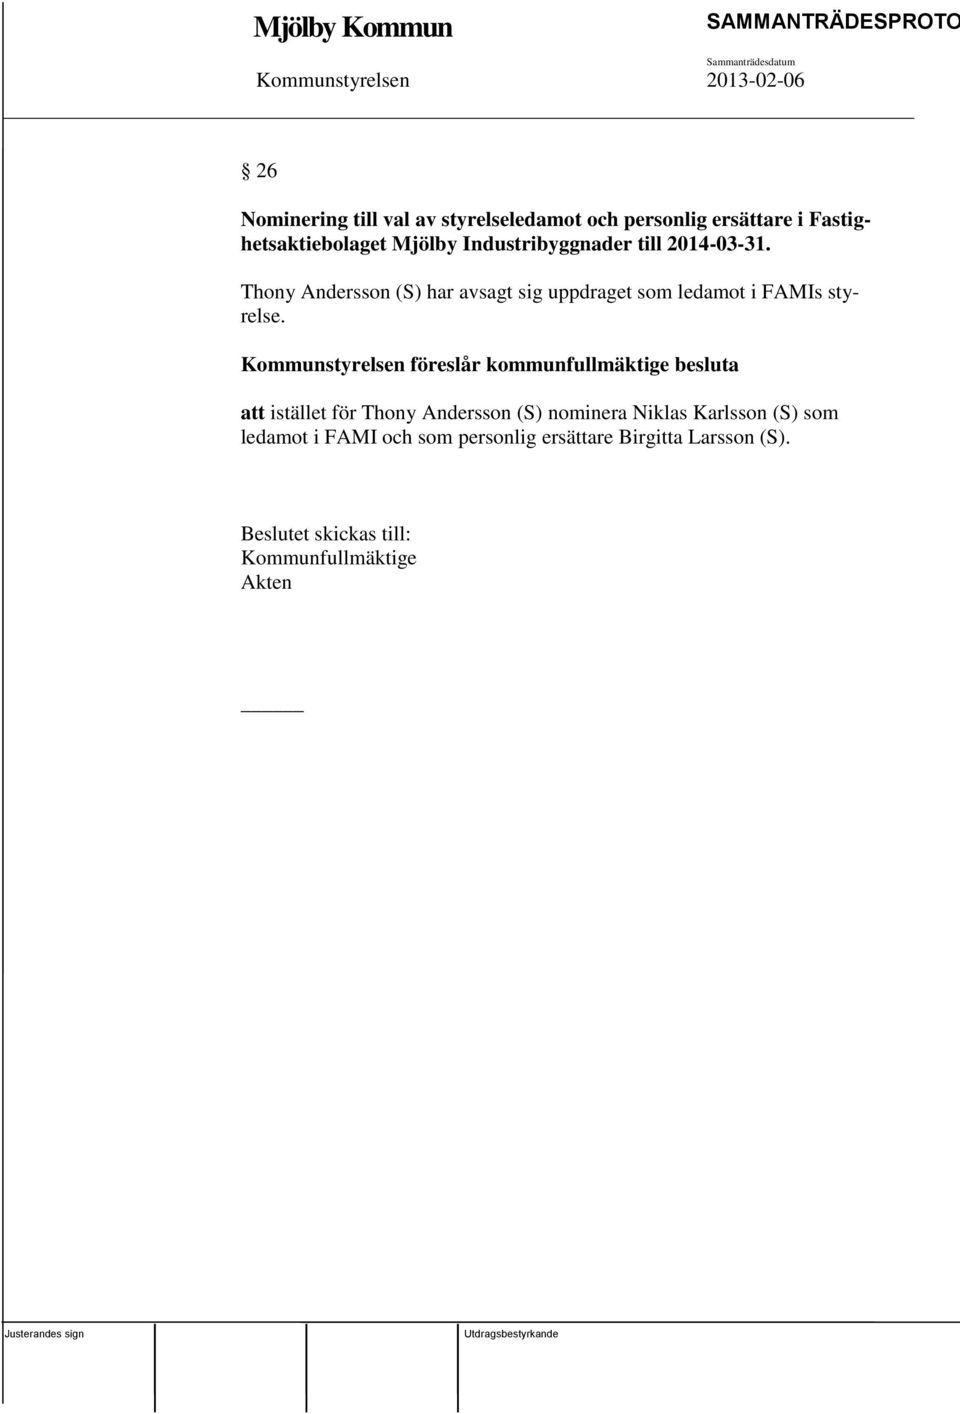 Kommunstyrelsen föreslår kommunfullmäktige besluta att istället för Thony Andersson (S) nominera Niklas